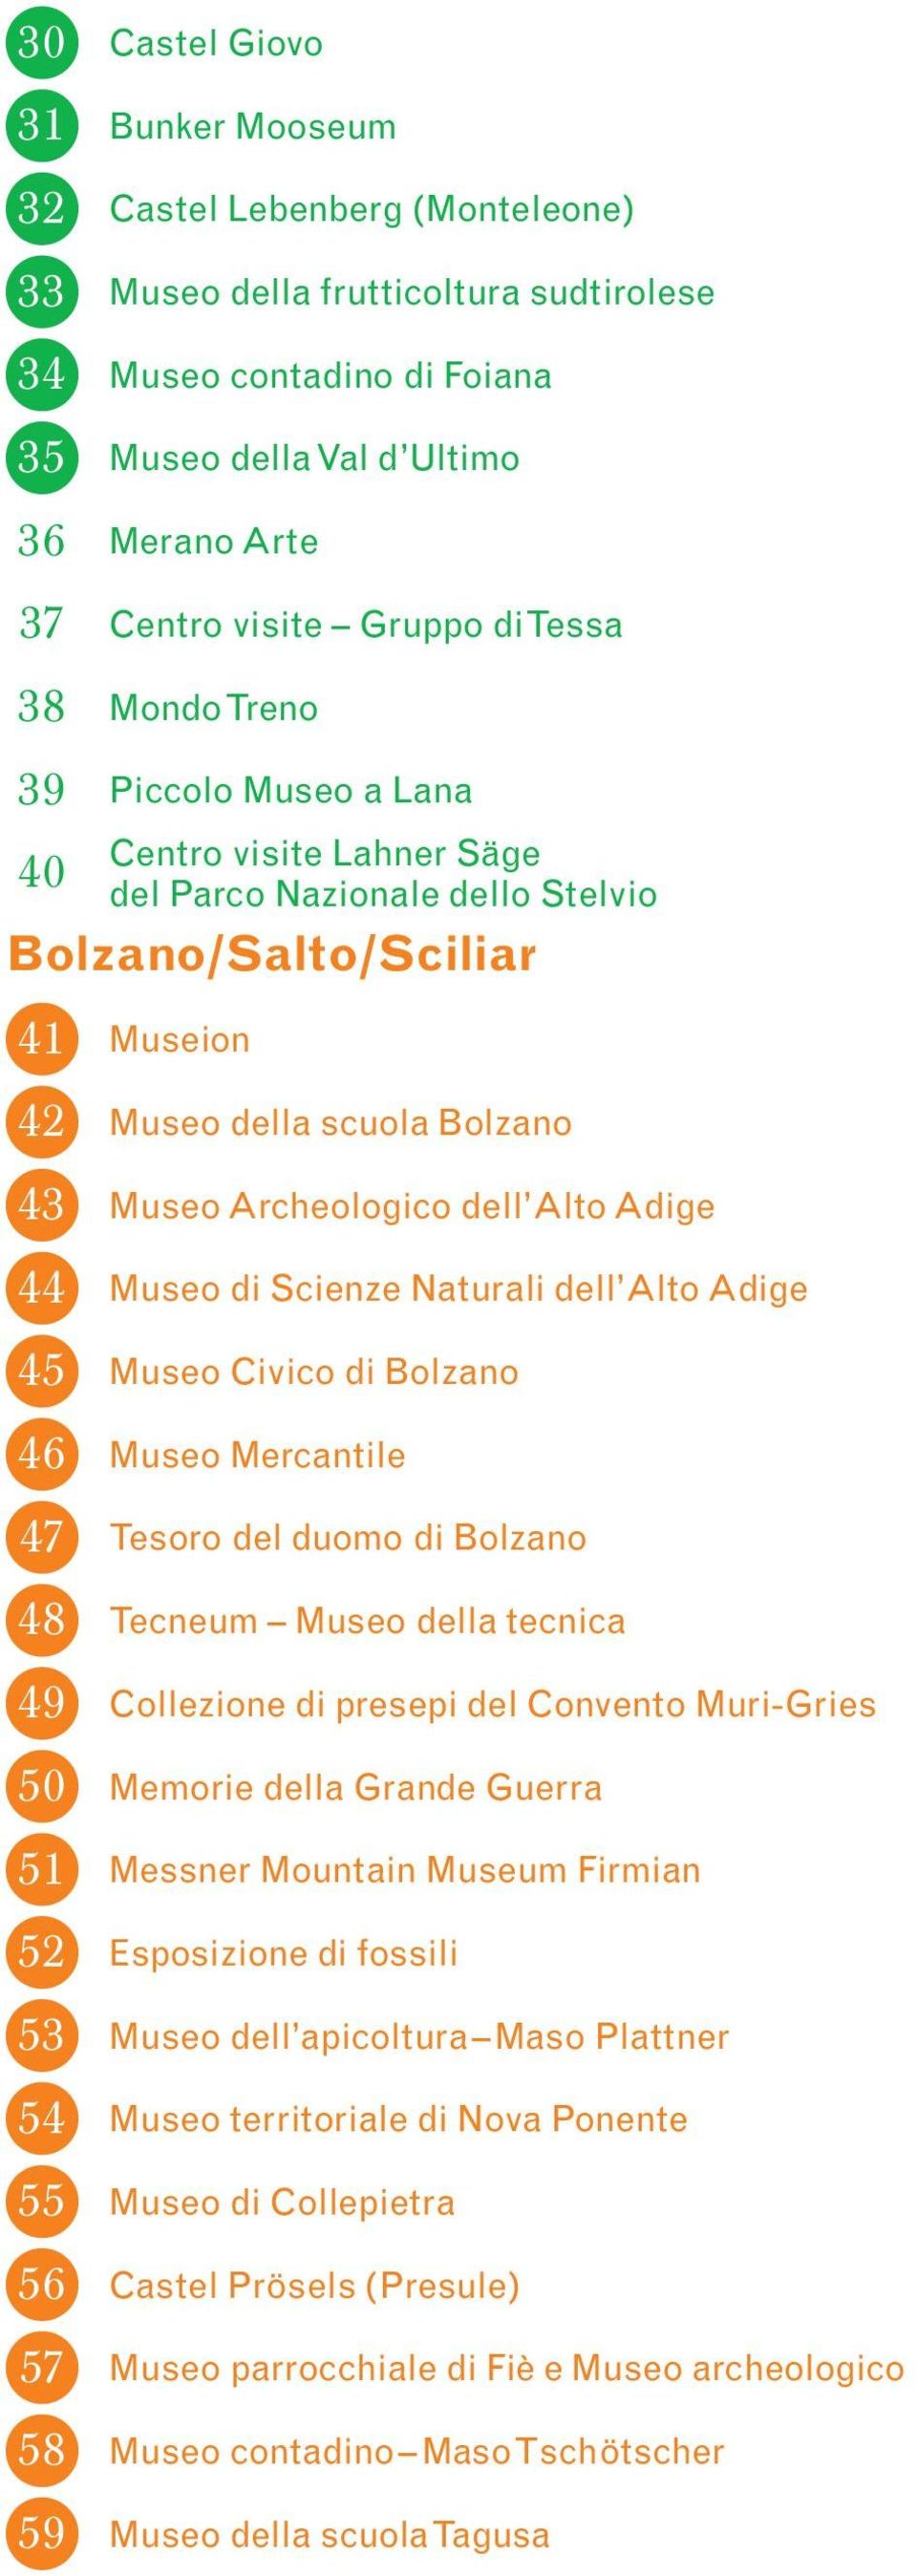 Museion Museo della scuola Bolzano Museo Archeologico dell Alto Adige Museo di Scienze Naturali dell Alto Adige Museo Civico di Bolzano Museo Mercantile Tesoro del duomo di Bolzano Tecneum Museo